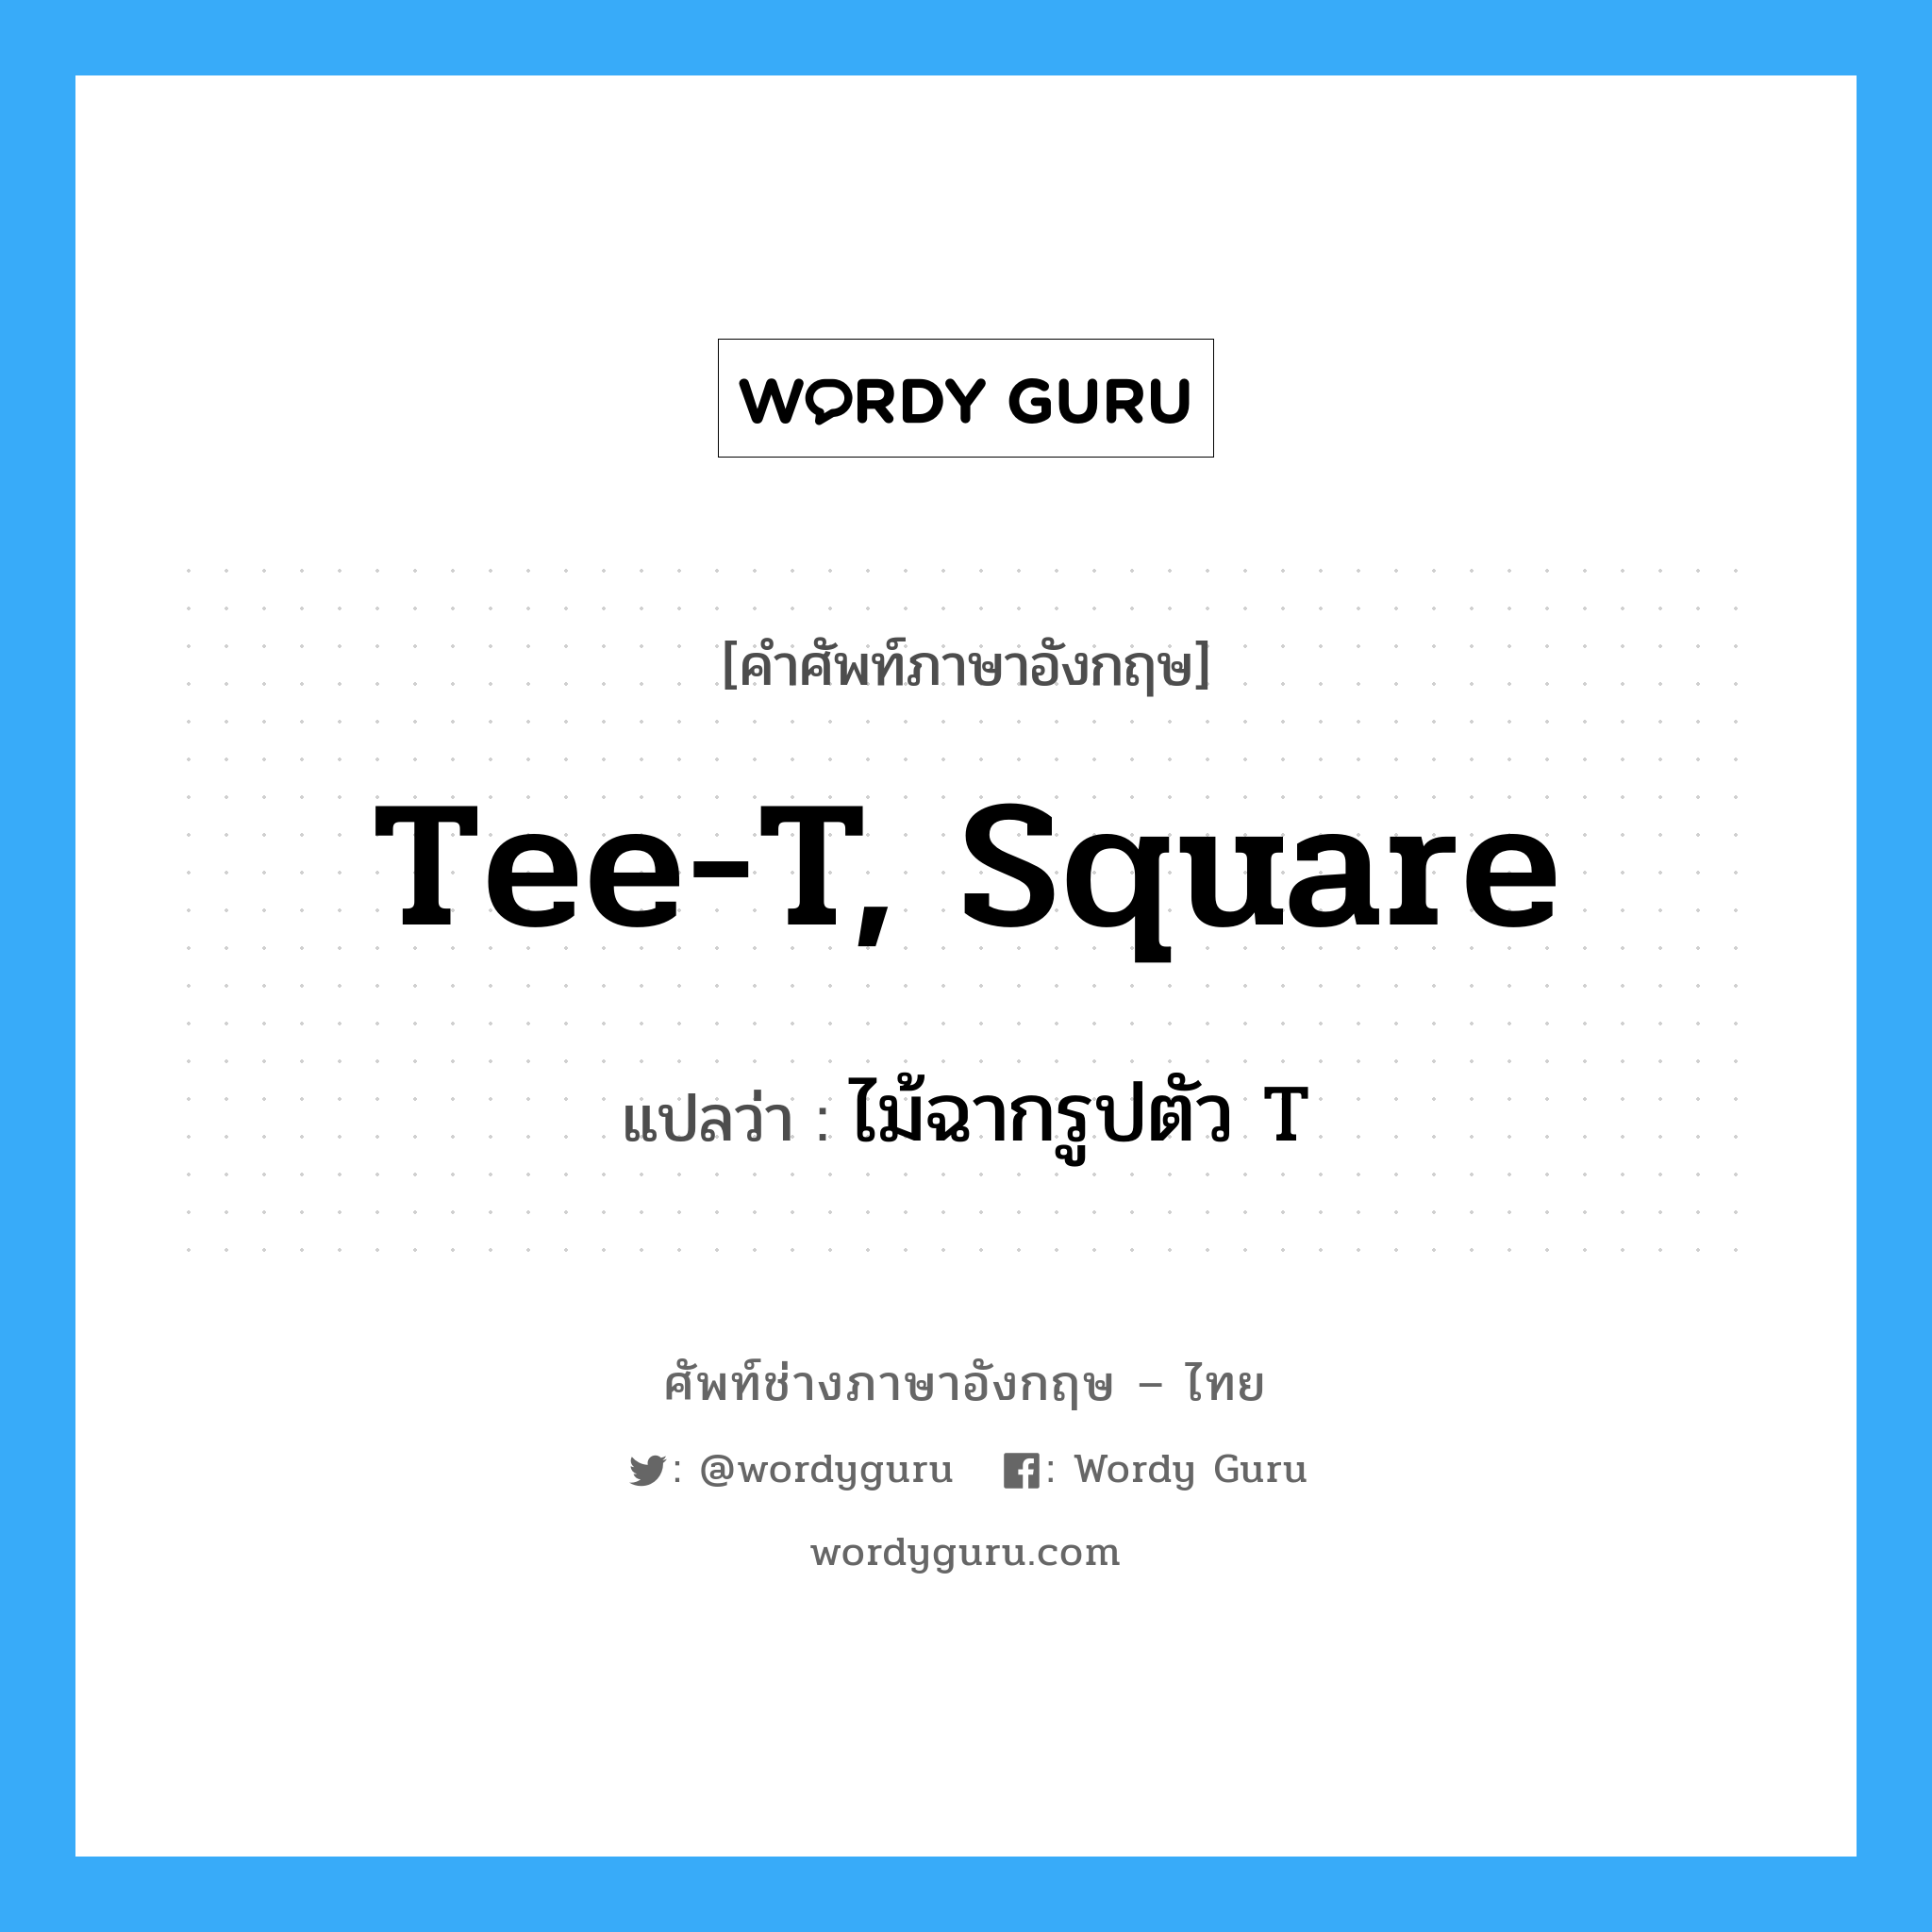 tee-T, square แปลว่า?, คำศัพท์ช่างภาษาอังกฤษ - ไทย tee-T, square คำศัพท์ภาษาอังกฤษ tee-T, square แปลว่า ไม้ฉากรูปตัว T